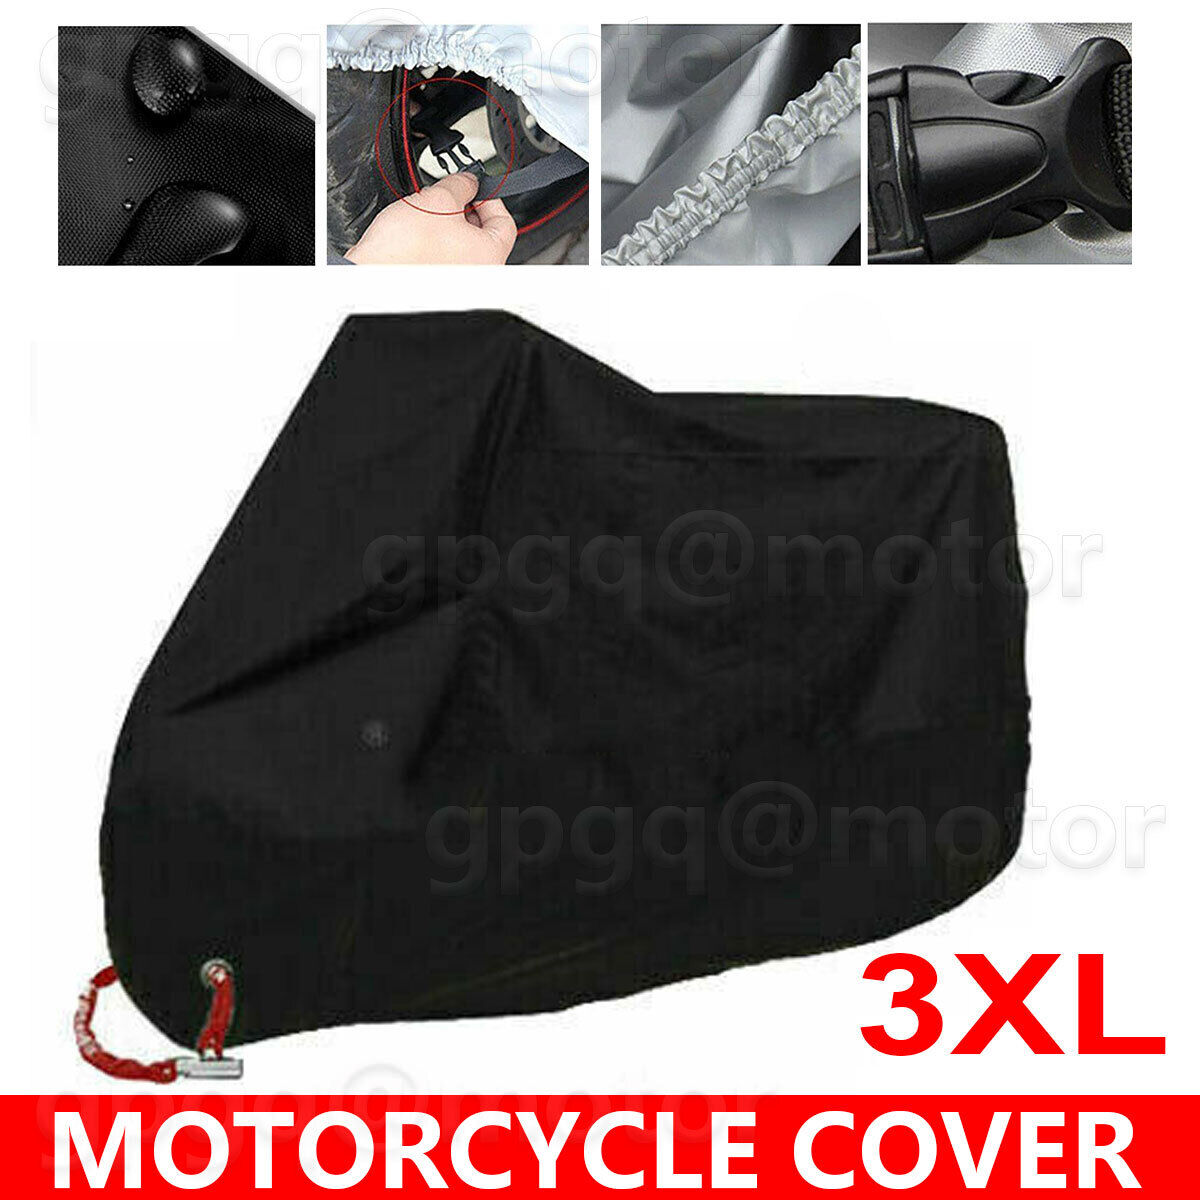 Motorcycle Cover Black 3XL Waterproof Bike Outdoor Rain Dust UV Protector US